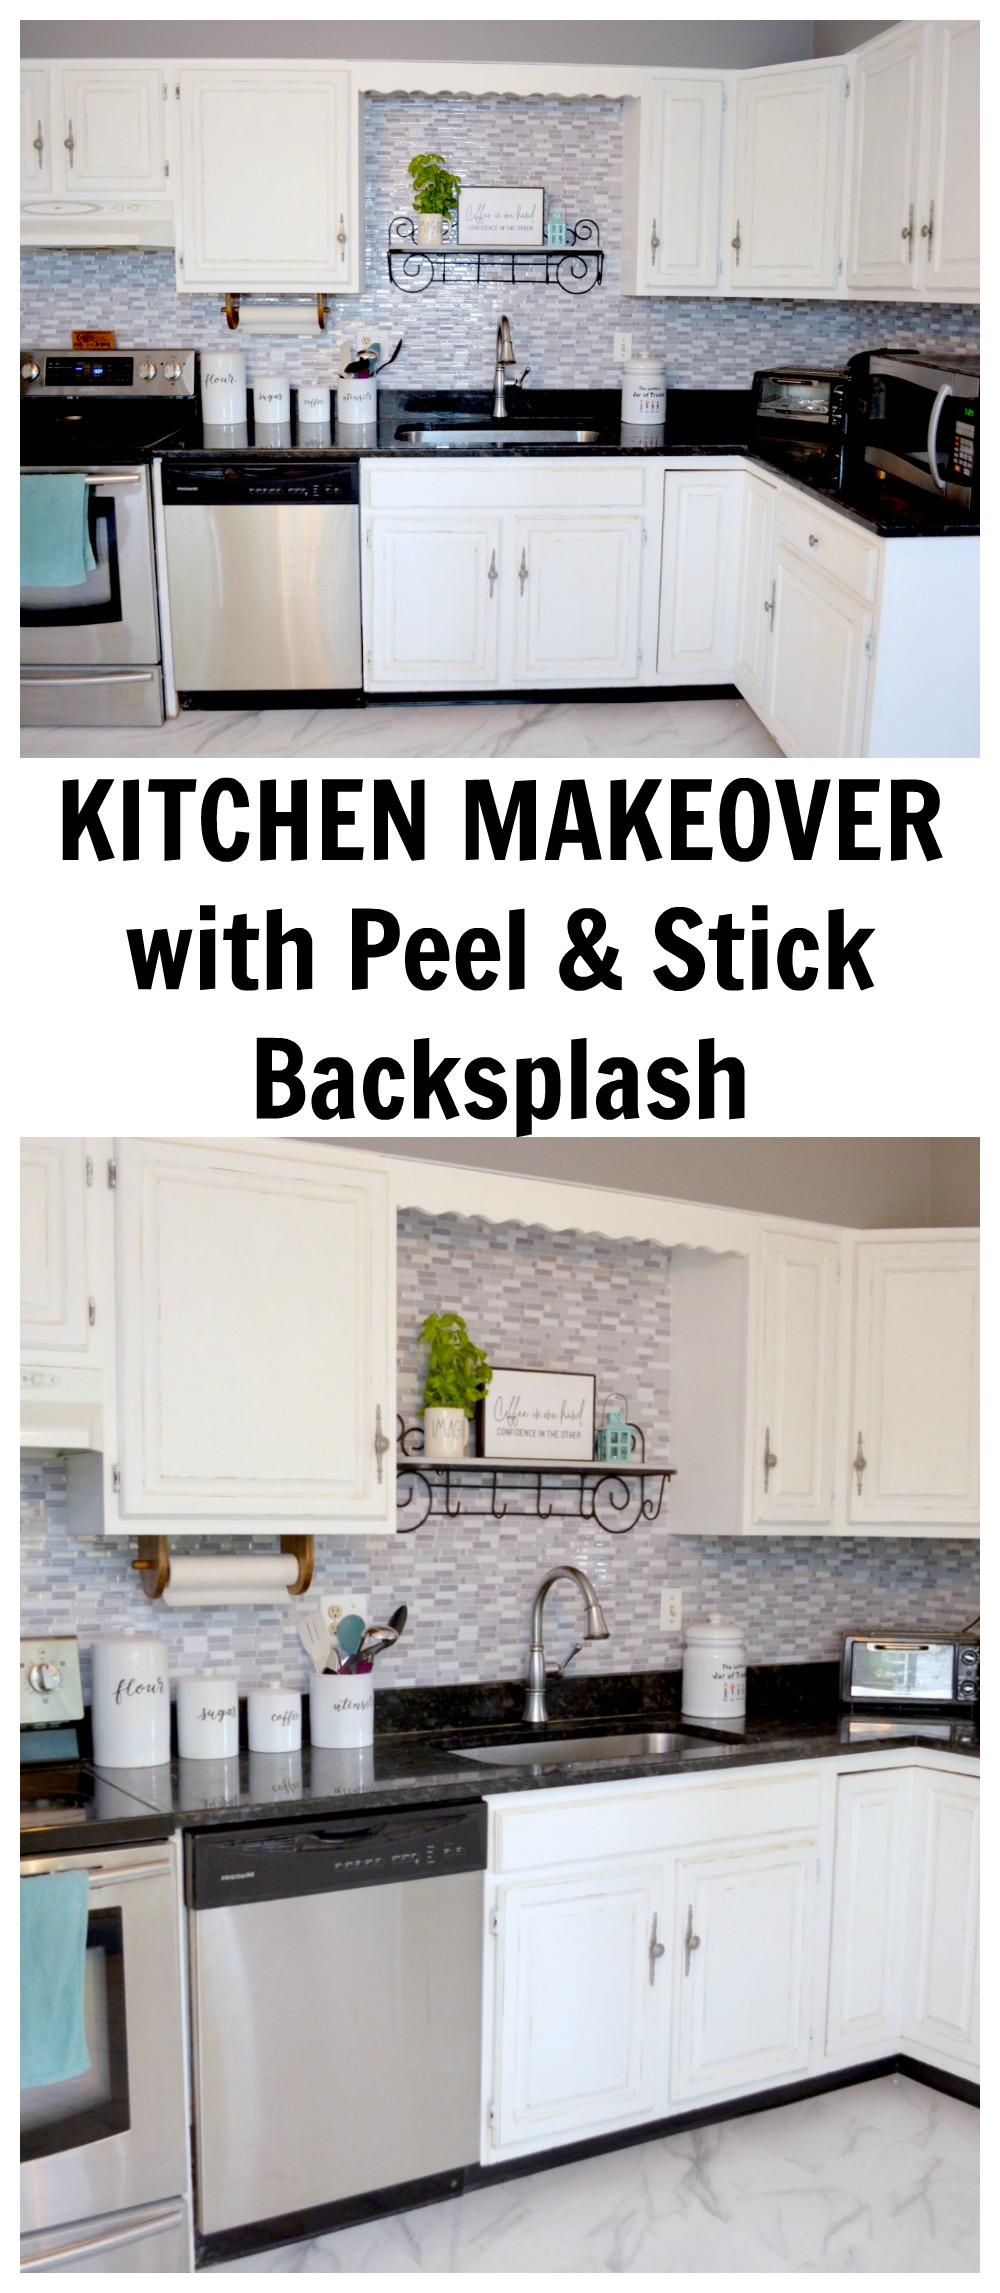 Kitchen makeover with Peel & Stick Backsplash